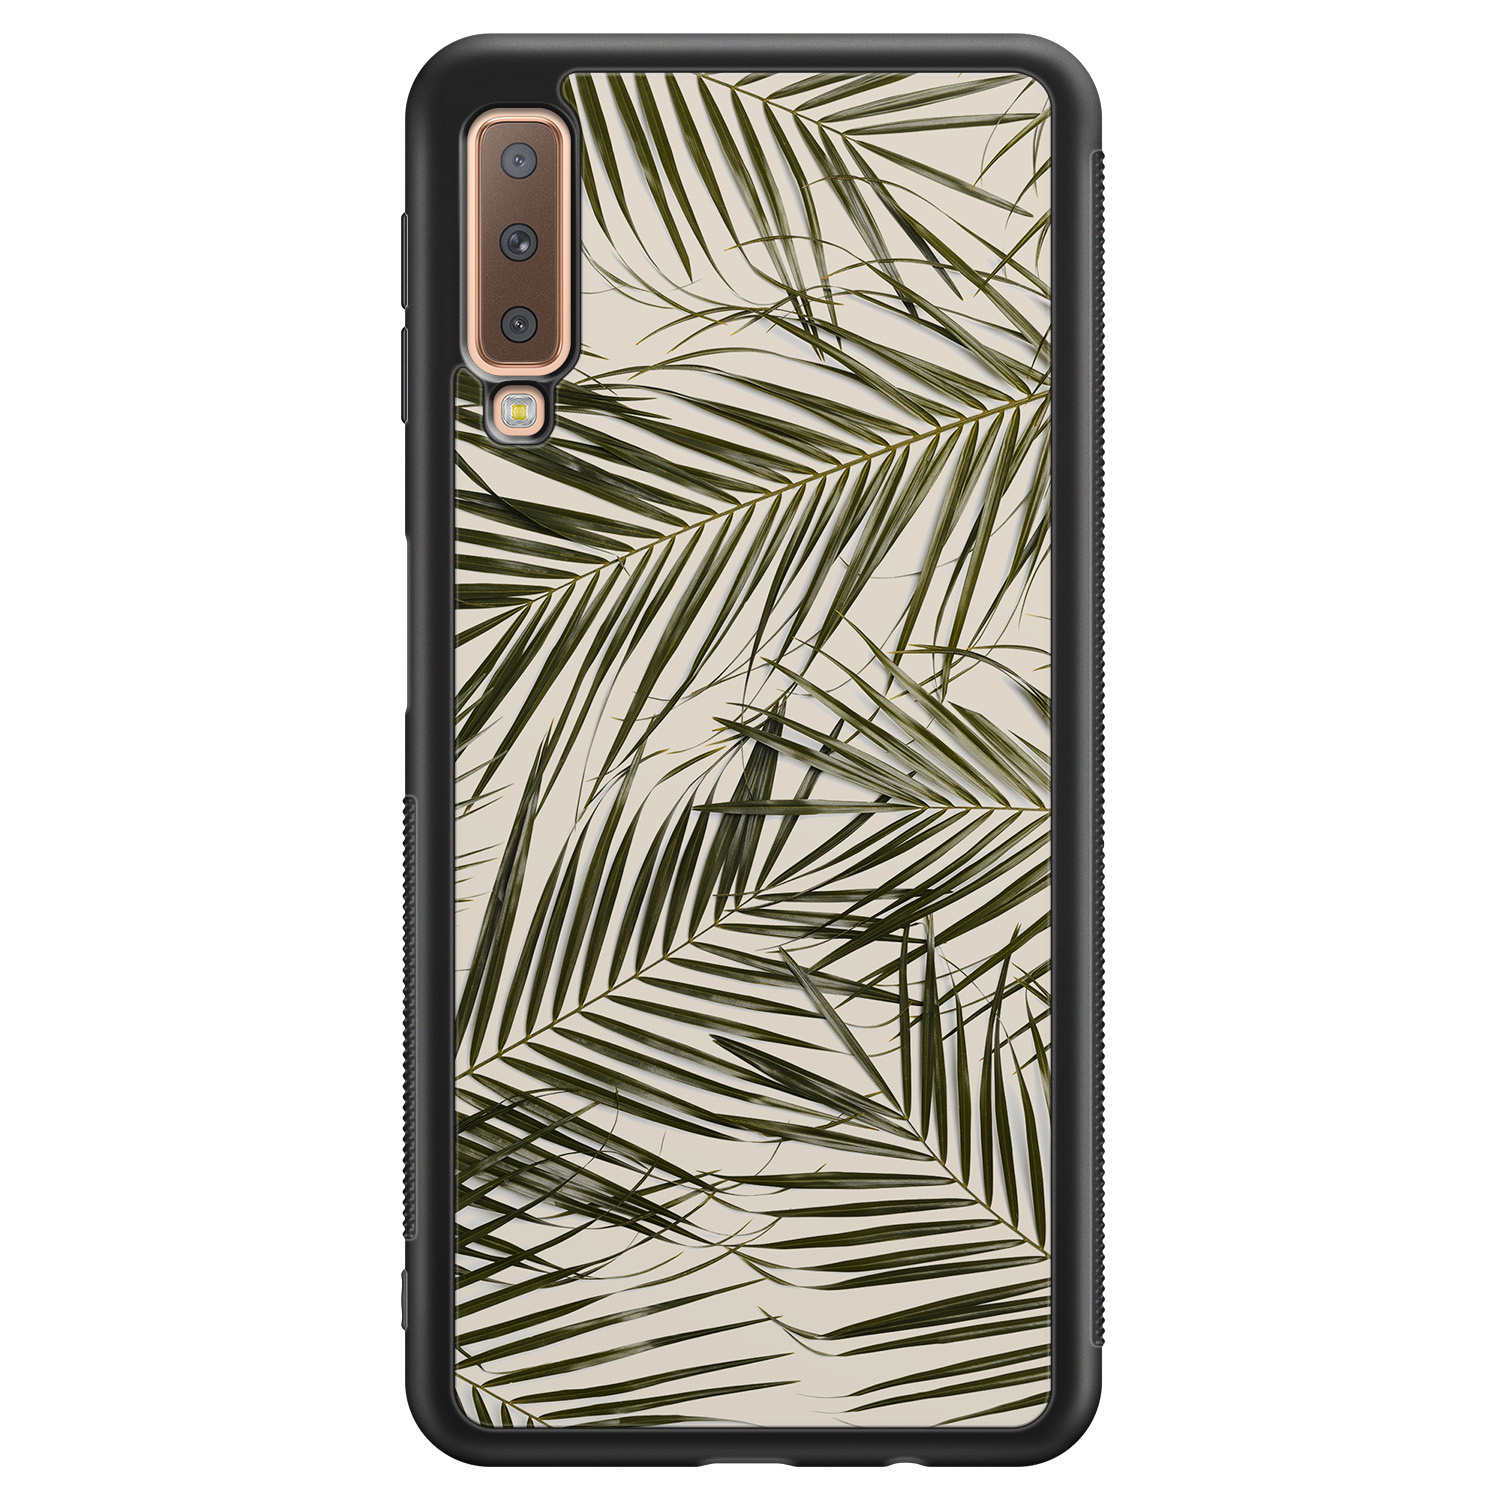 Leuke Telefoonhoesjes Samsung Galaxy A7 2018 hoesje - Palm leaves